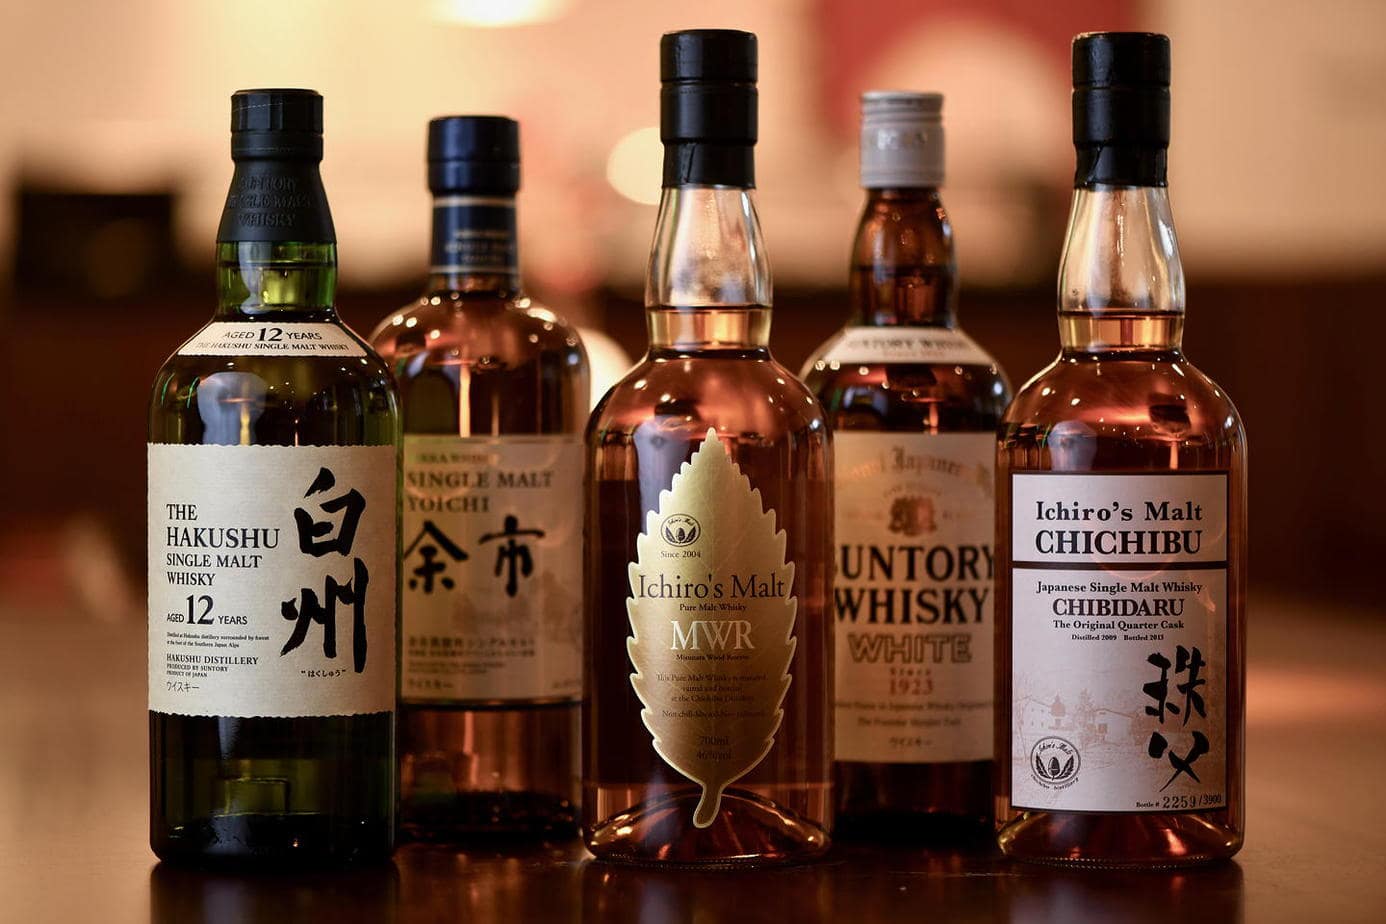 Japanese whisky - the insider tip for whisky connoisseurs